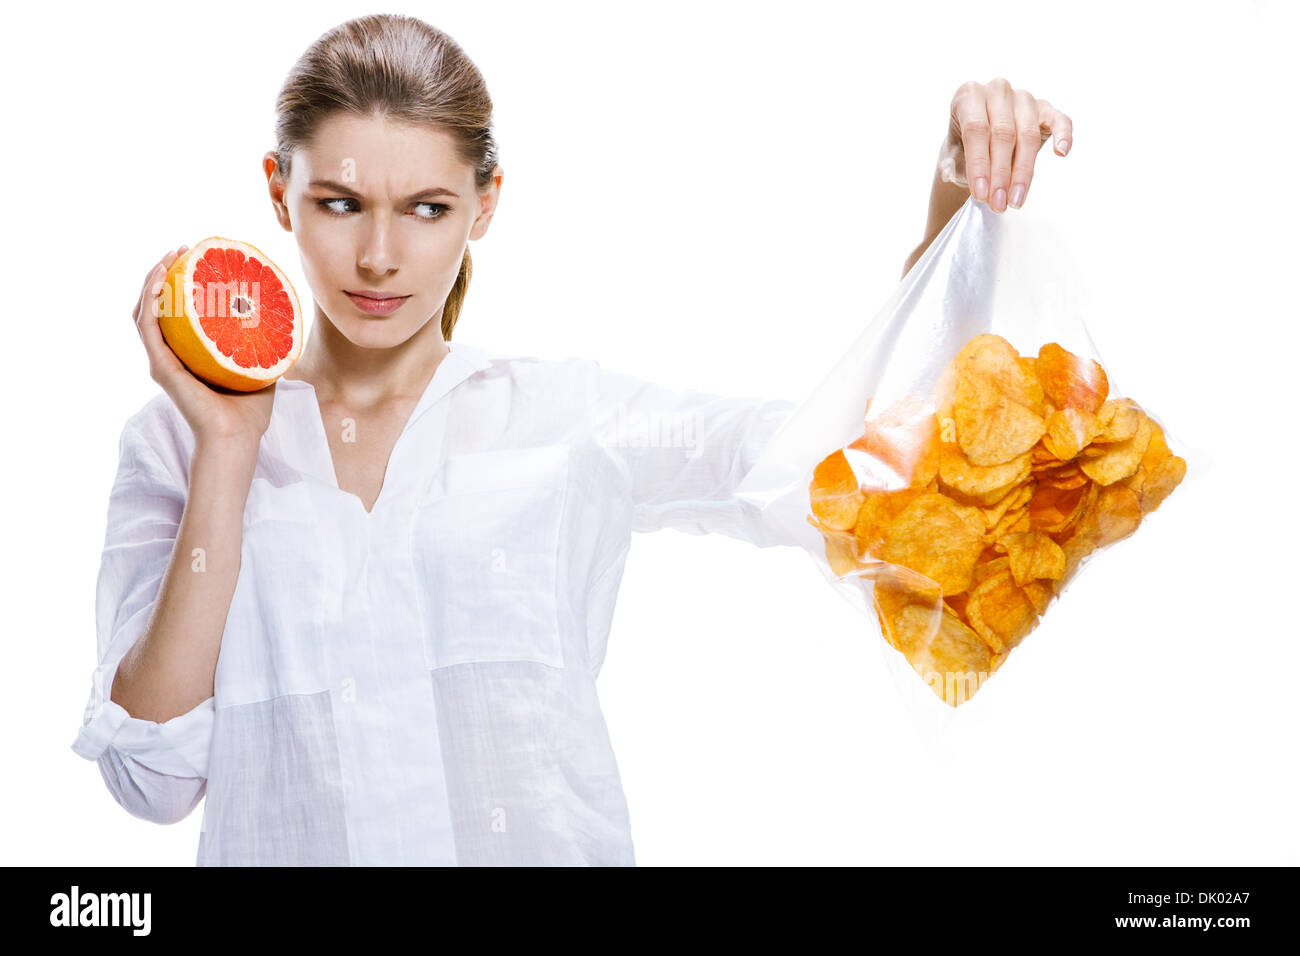 Morenas sanos contra los chips - aisladas sobre fondo blanco. Foto de stock